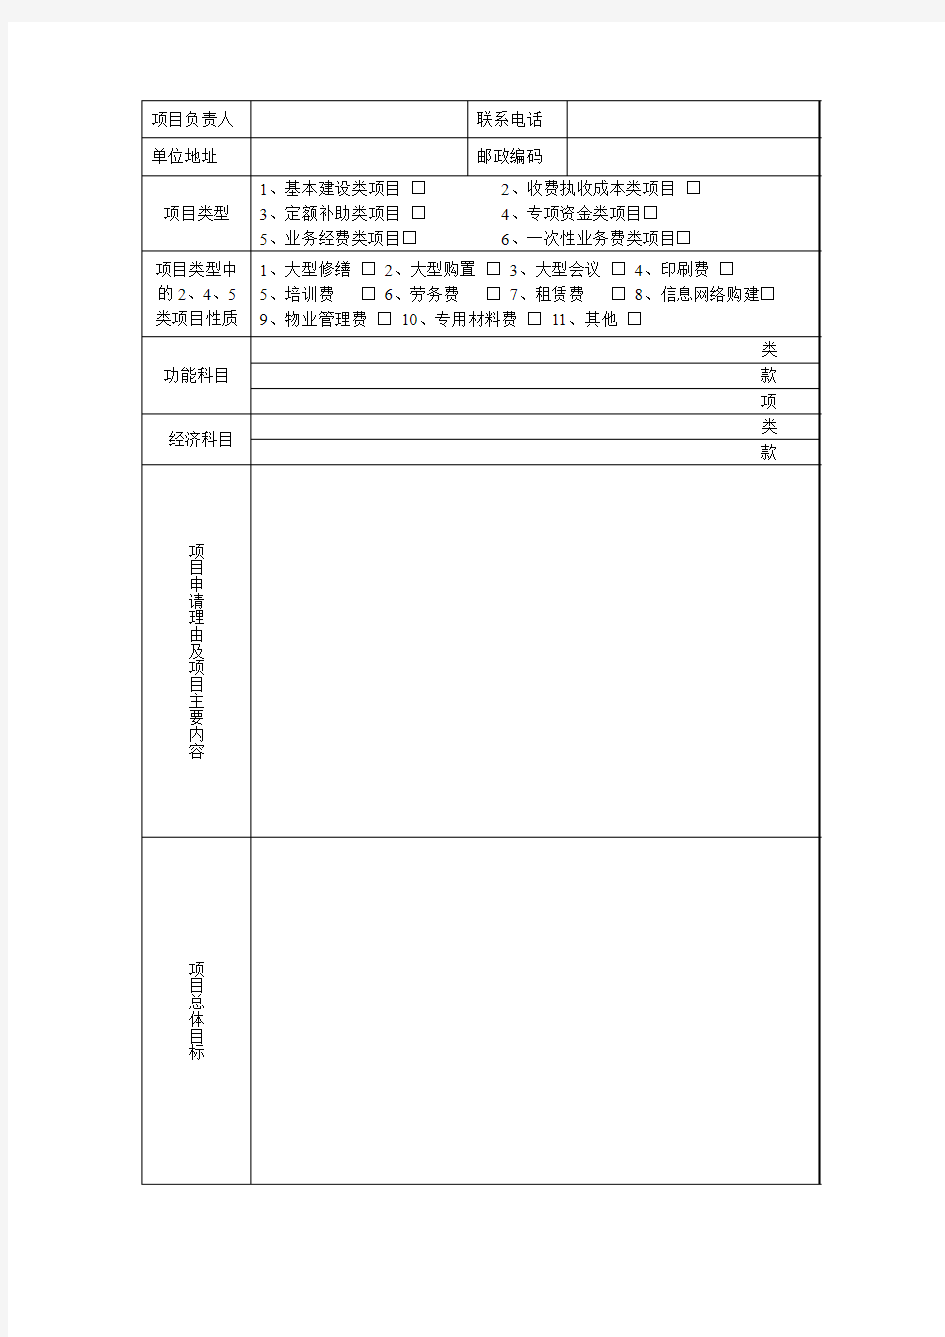 项目申报书(甲) - 临沂市环境保护局